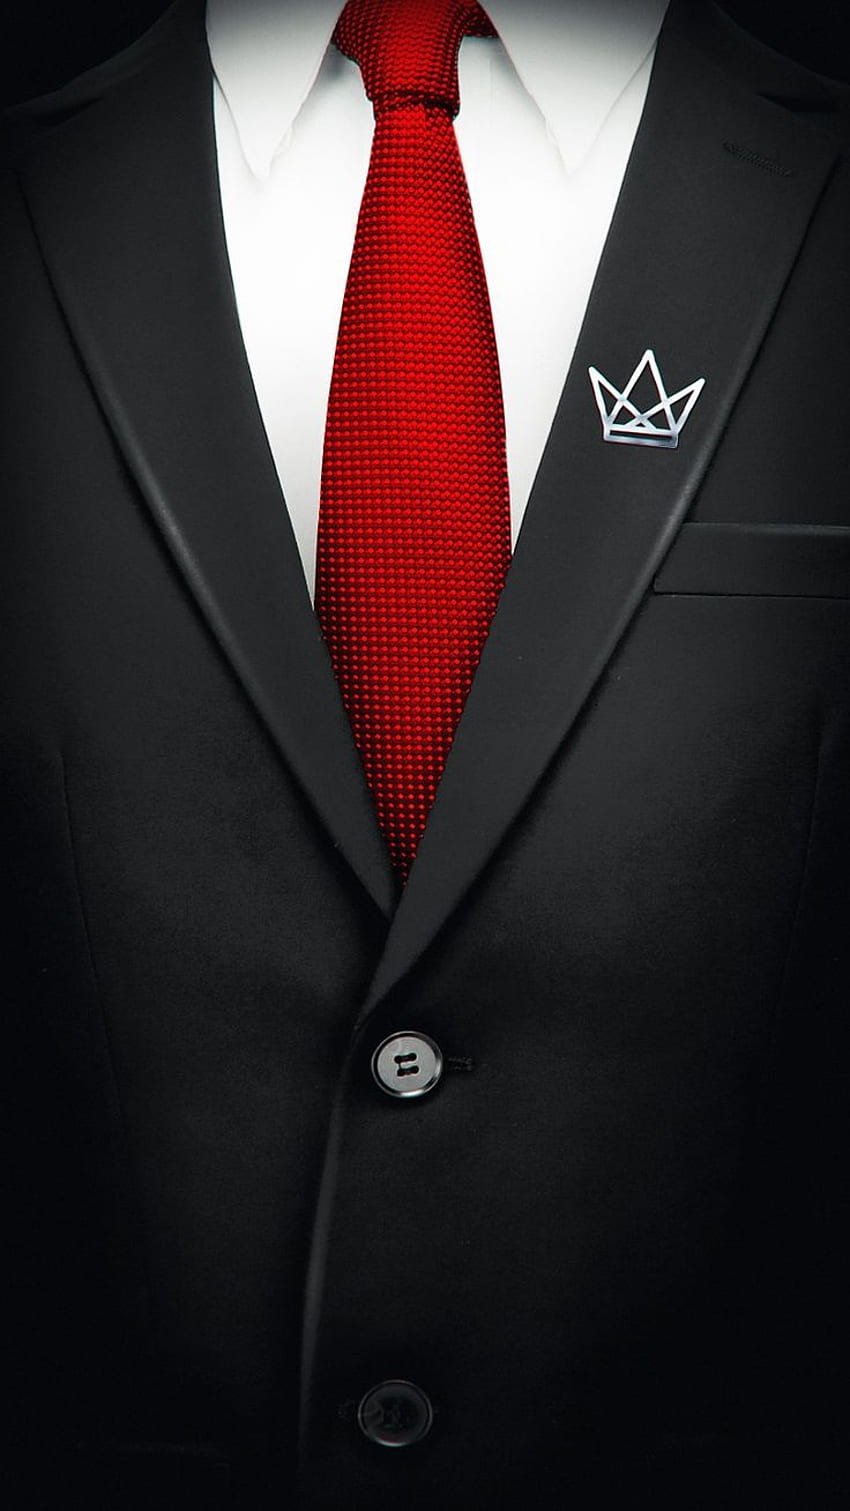 Cristeriot su phonfo. iPhone, telefono per uomo, iphone neon, abito nero cravatta rossa Sfondo del telefono HD